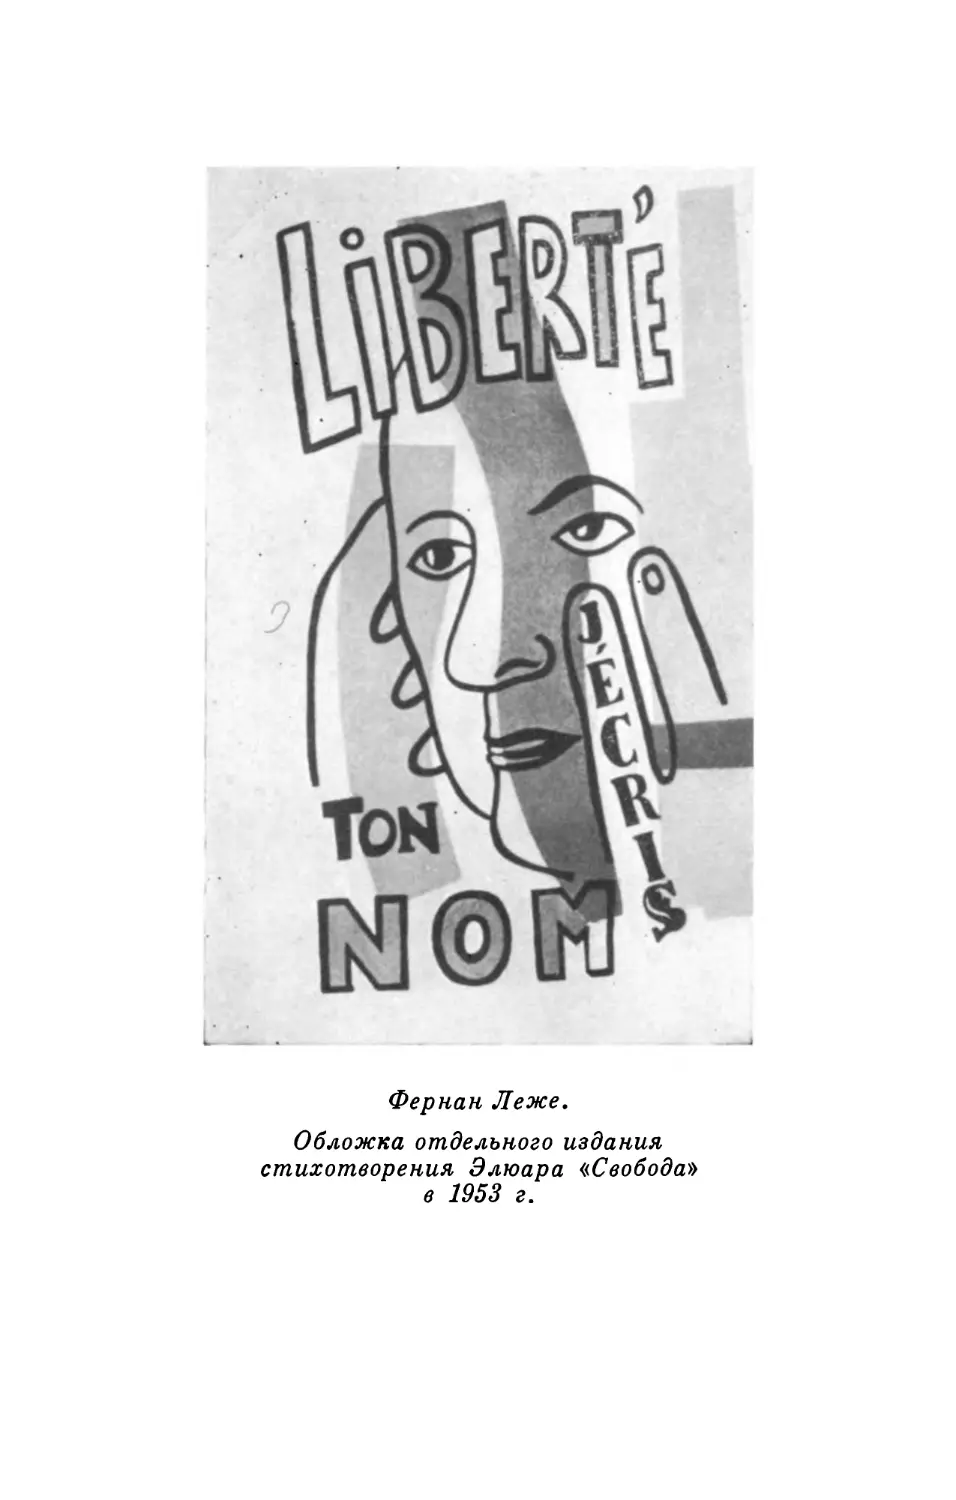 Вклейка. Обложка Фернана Леже для отдельного издания стихотворения Элюара «Свобода» в 1953 г.